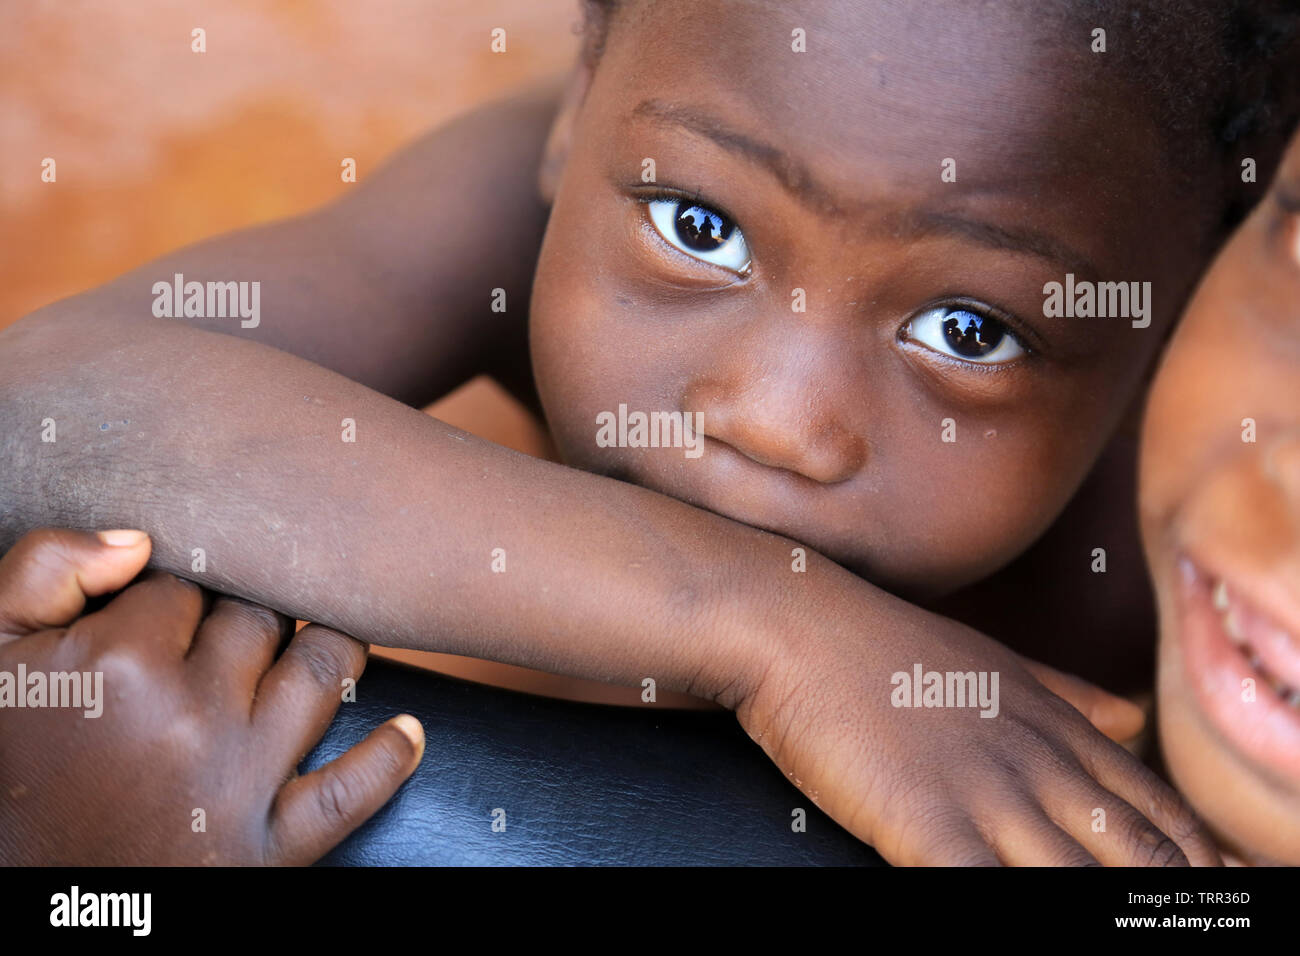 Ritratto d'onu enfant togolais. La convenzione di Lomé. Il Togo. Afrique de l'Ouest. Foto Stock